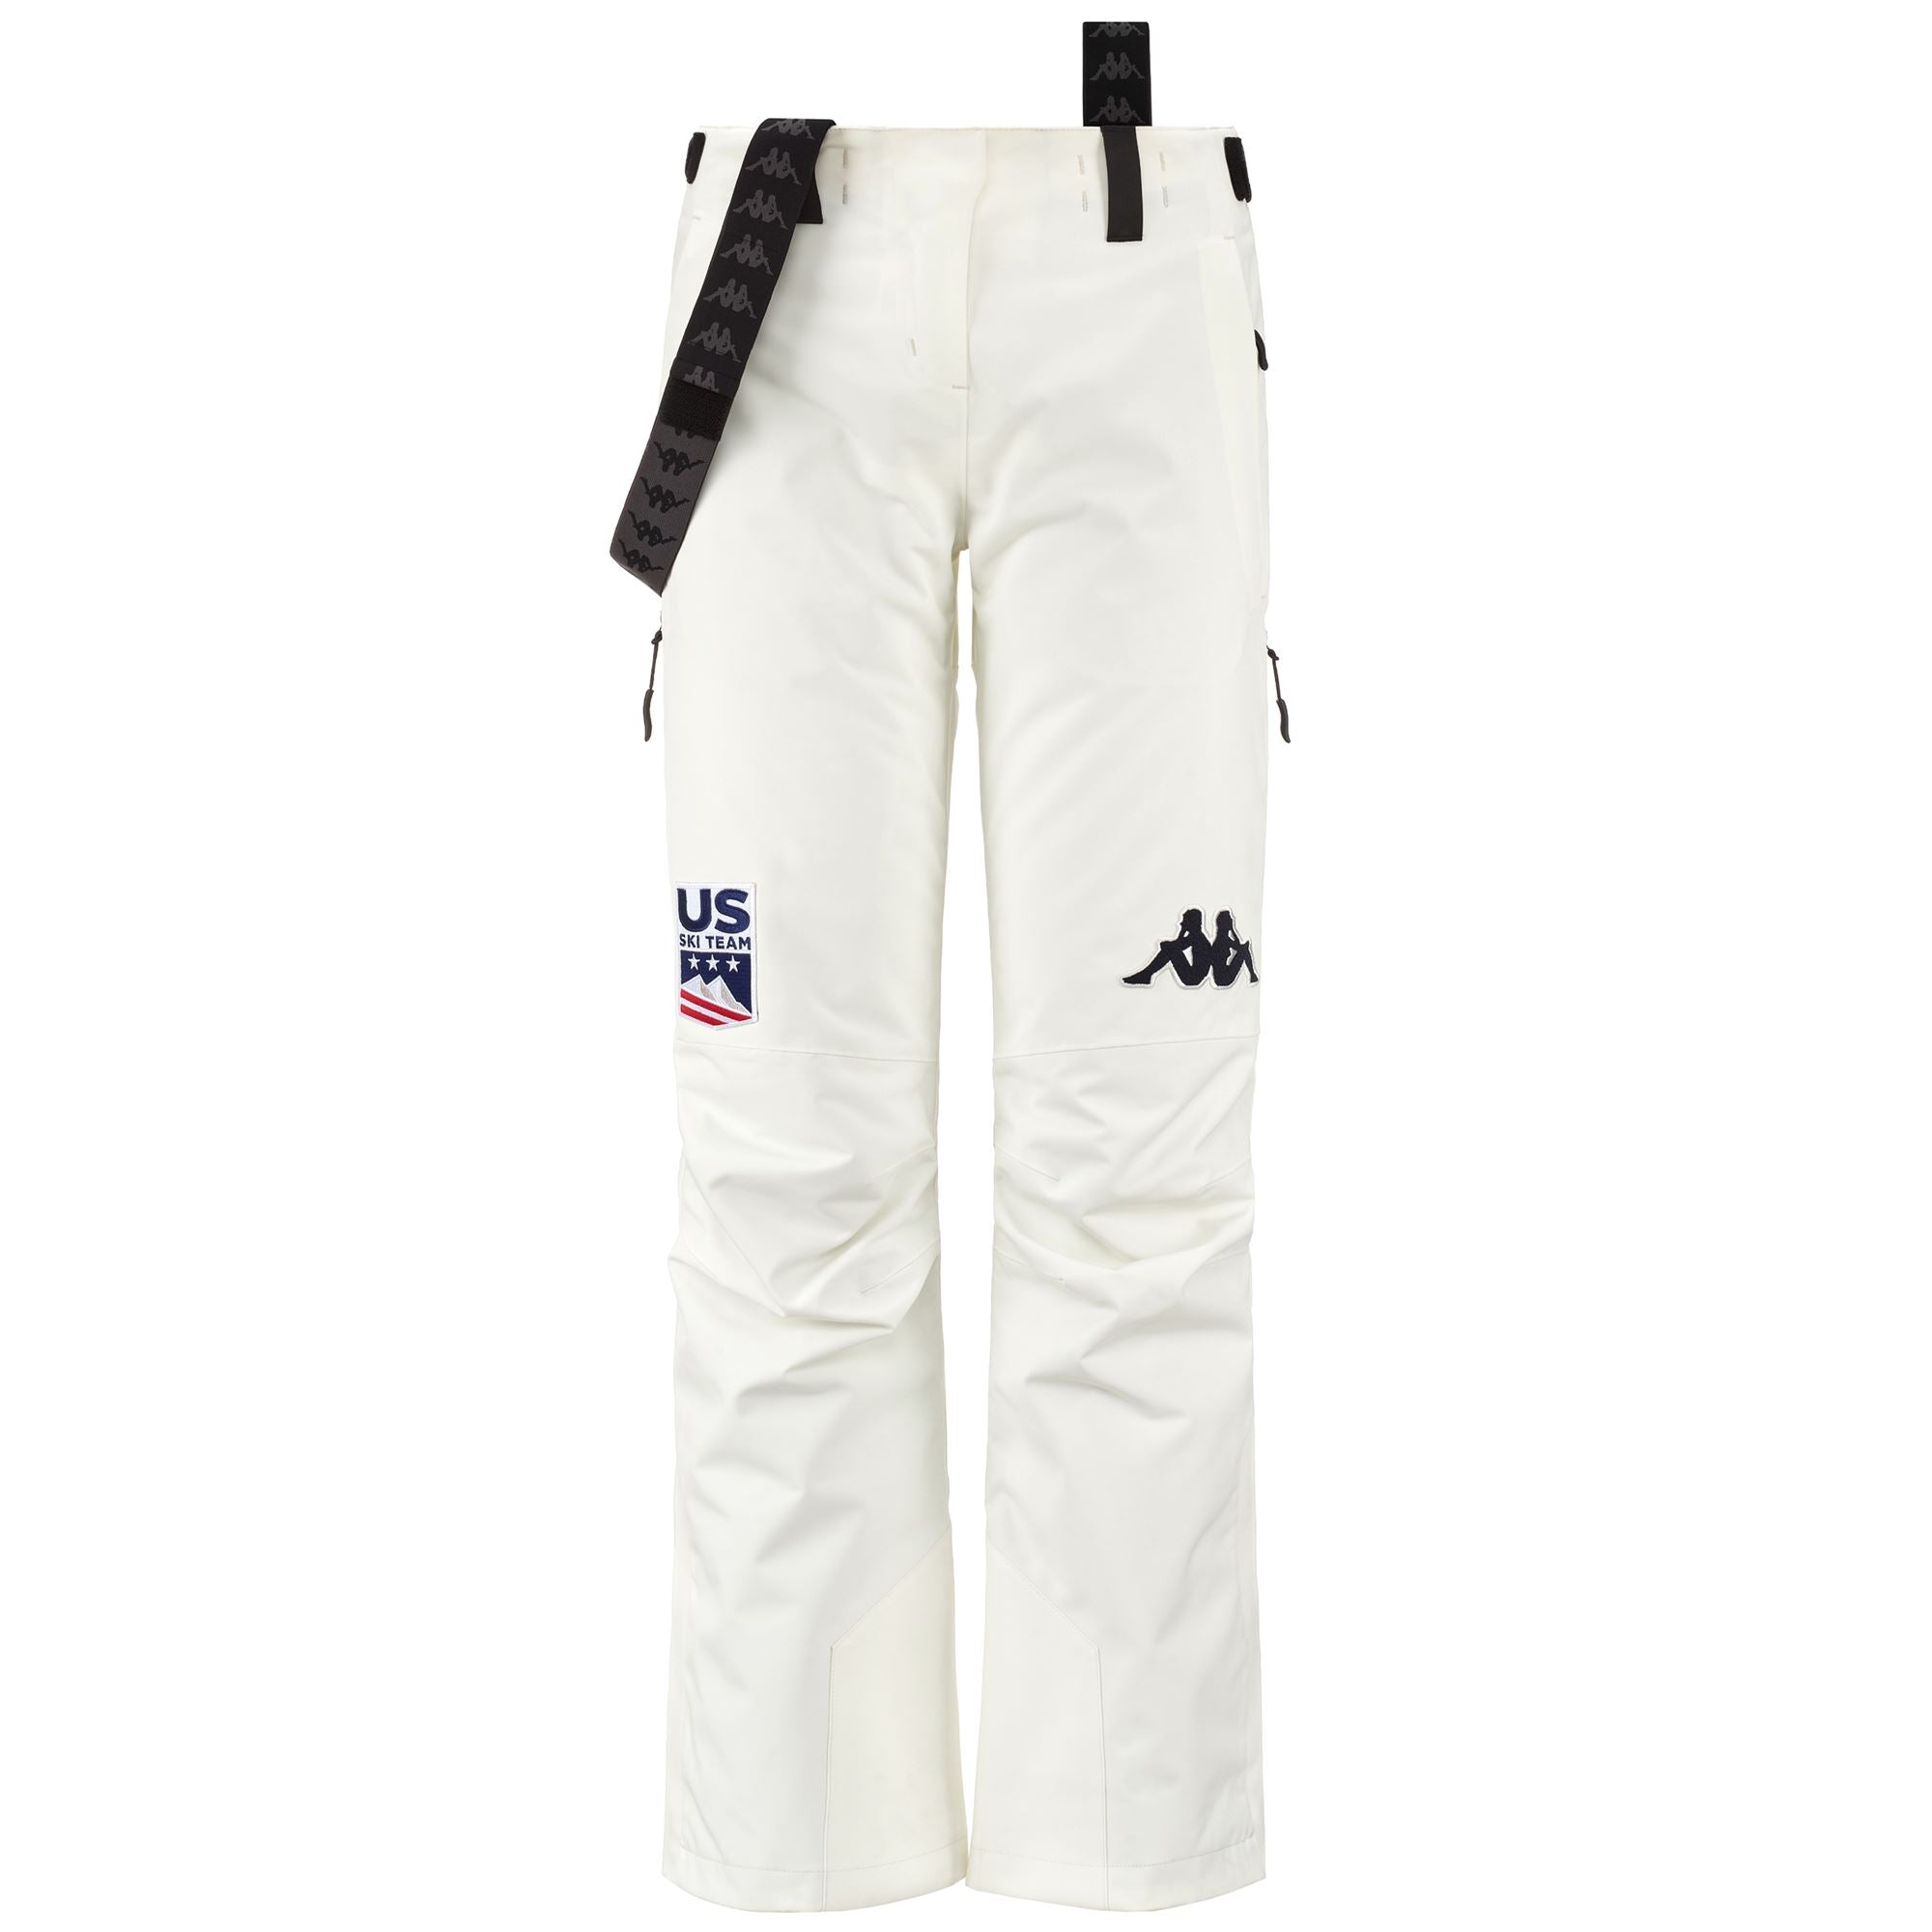 Pants 665G US Sport Trousers WHITE ANTIQUE-BLACK